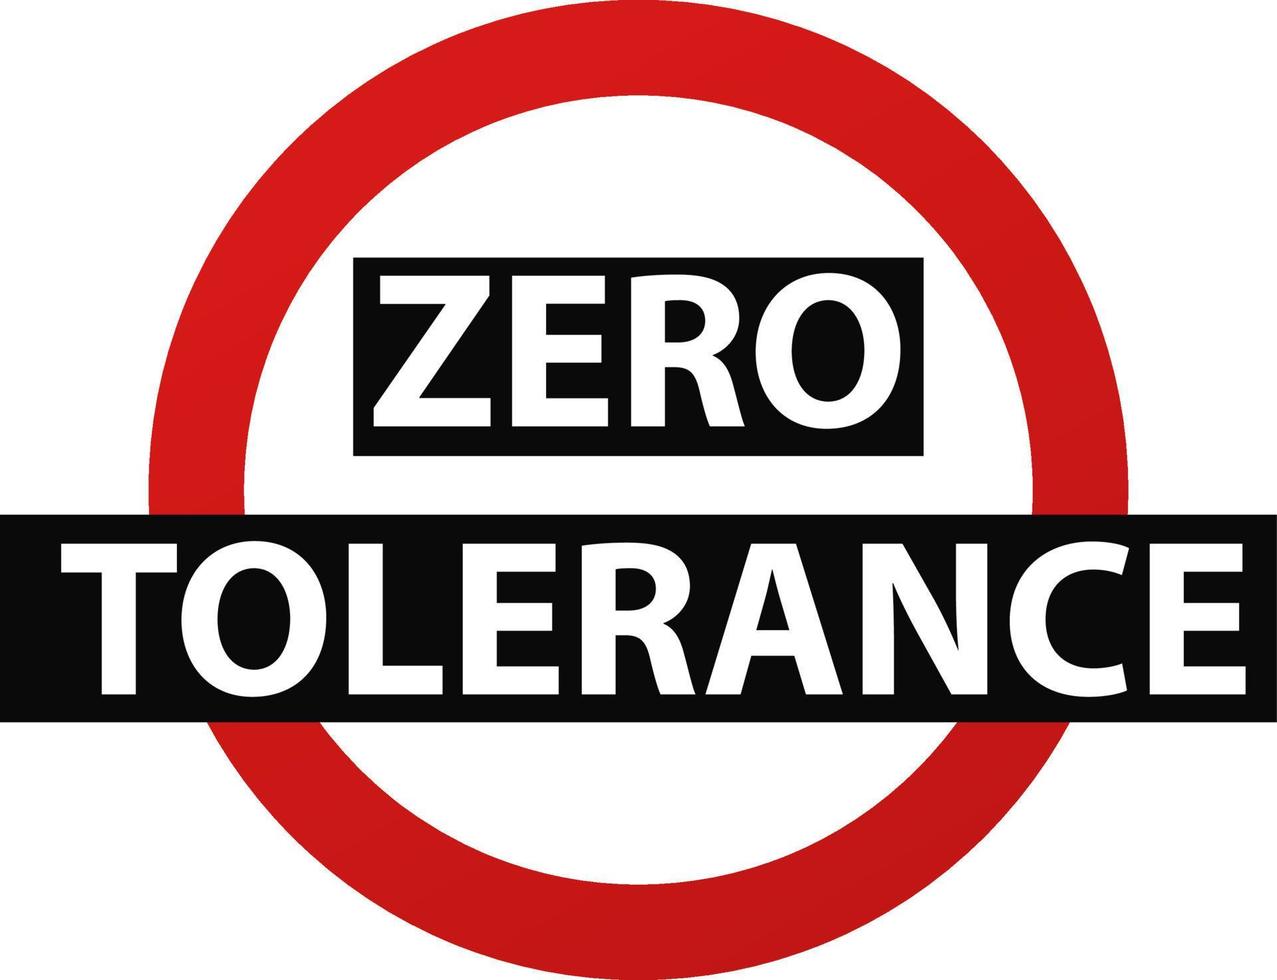 advertencia de tolerancia cero. círculo rojo discriminación con símbolo negro violencia y acoso falta de tolerancia y vector de leyes sociales.